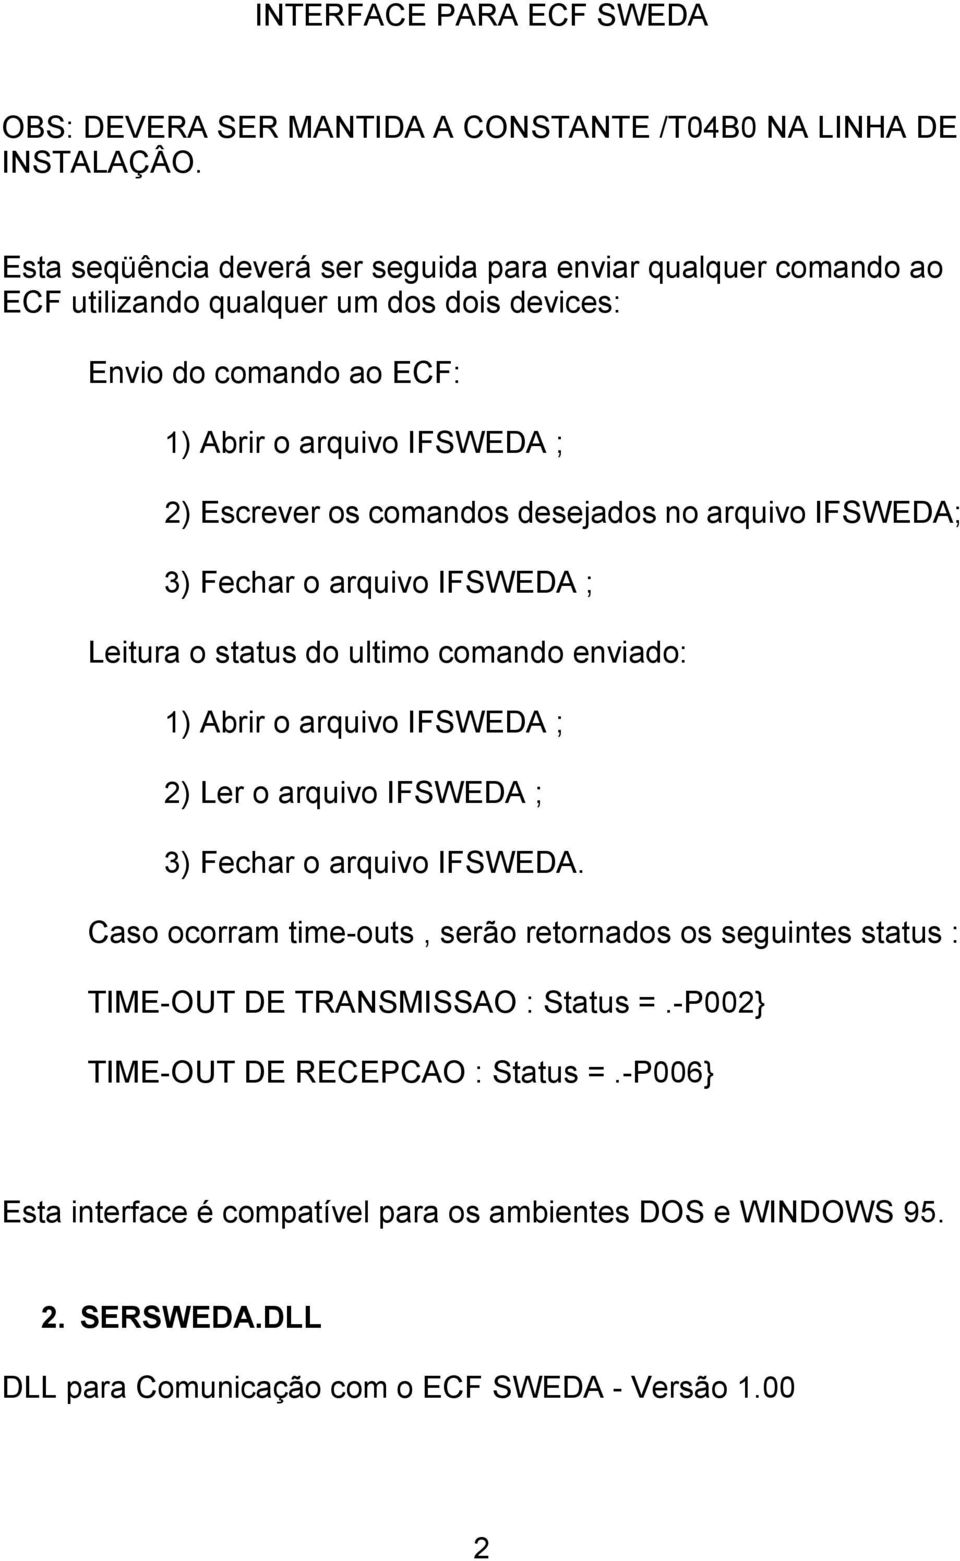 comandos desejados no arquivo IFSWEDA; 3) Fechar o arquivo IFSWEDA ; Leitura o status do ultimo comando enviado: 1) Abrir o arquivo IFSWEDA ; 2) Ler o arquivo IFSWEDA ; 3) Fechar o